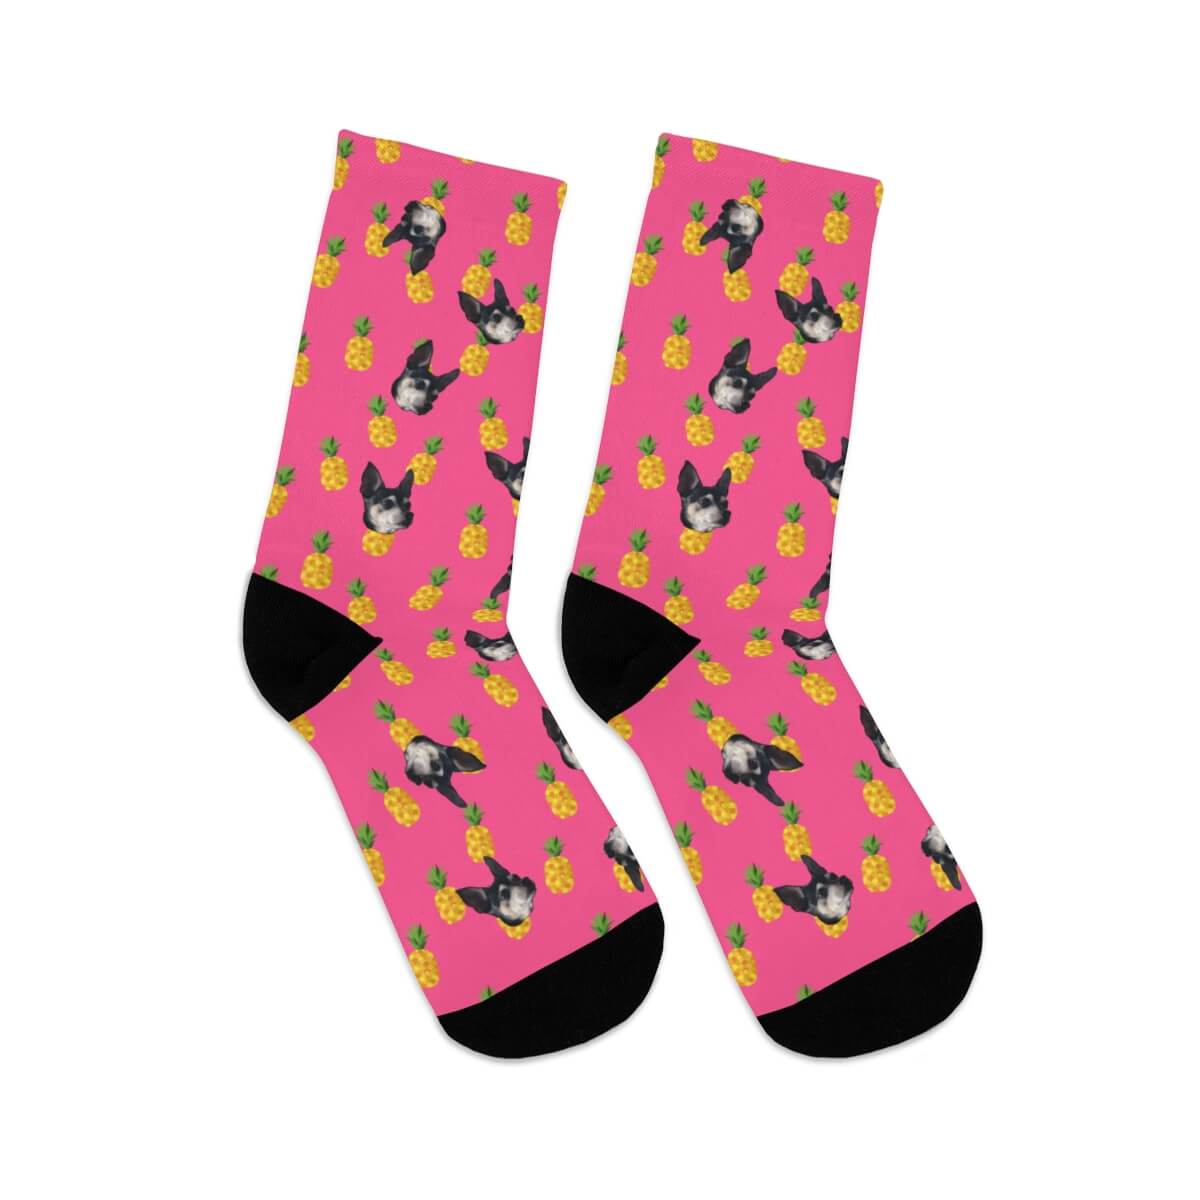 Custom Socks - Pineapples